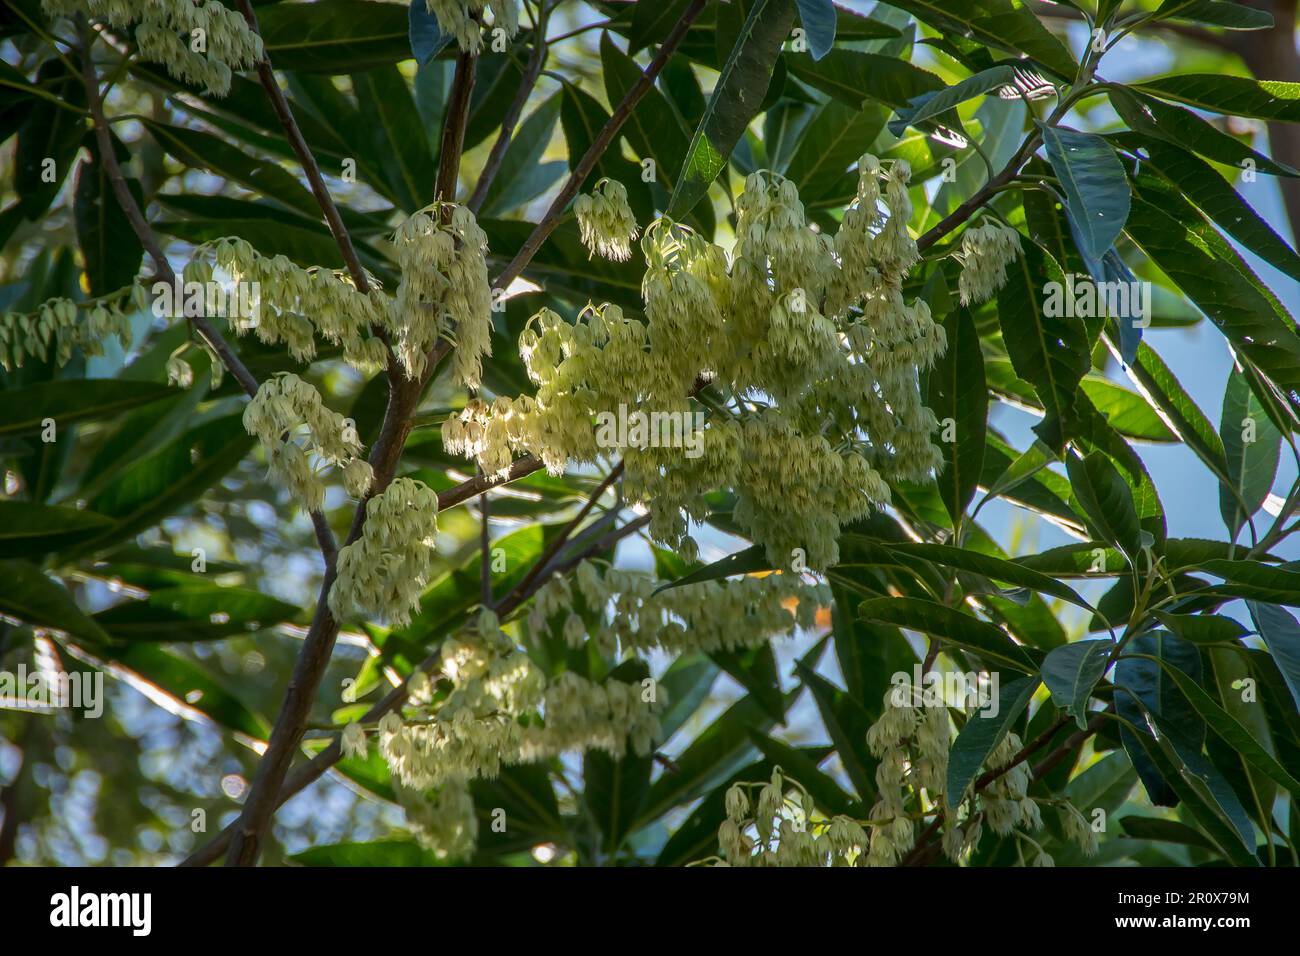 Racemi bianchi cremosi di fiori sui rami dell'albero australiano Blue Quandong, Elaeocarpus angustifolius. Piccoli fiori della foresta pluviale del Queensland. Foto Stock